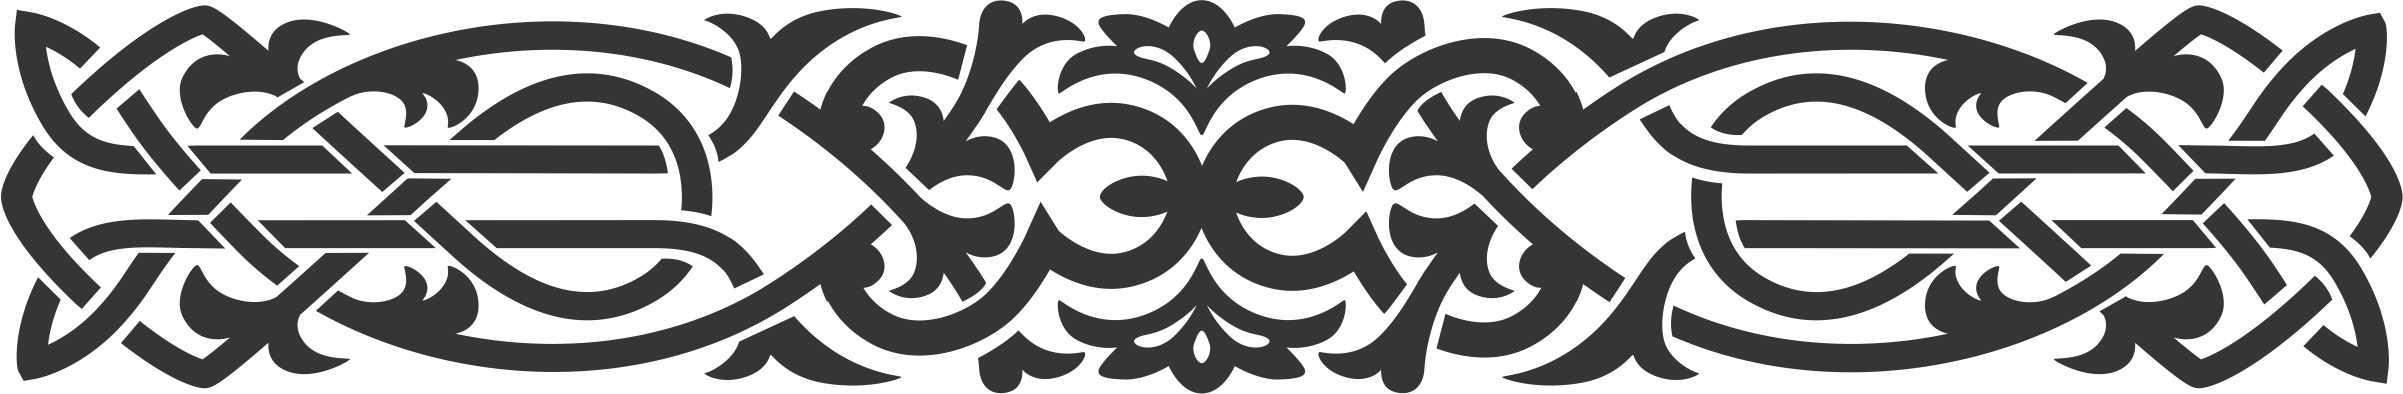 Ornamental Design Border Free DXF File